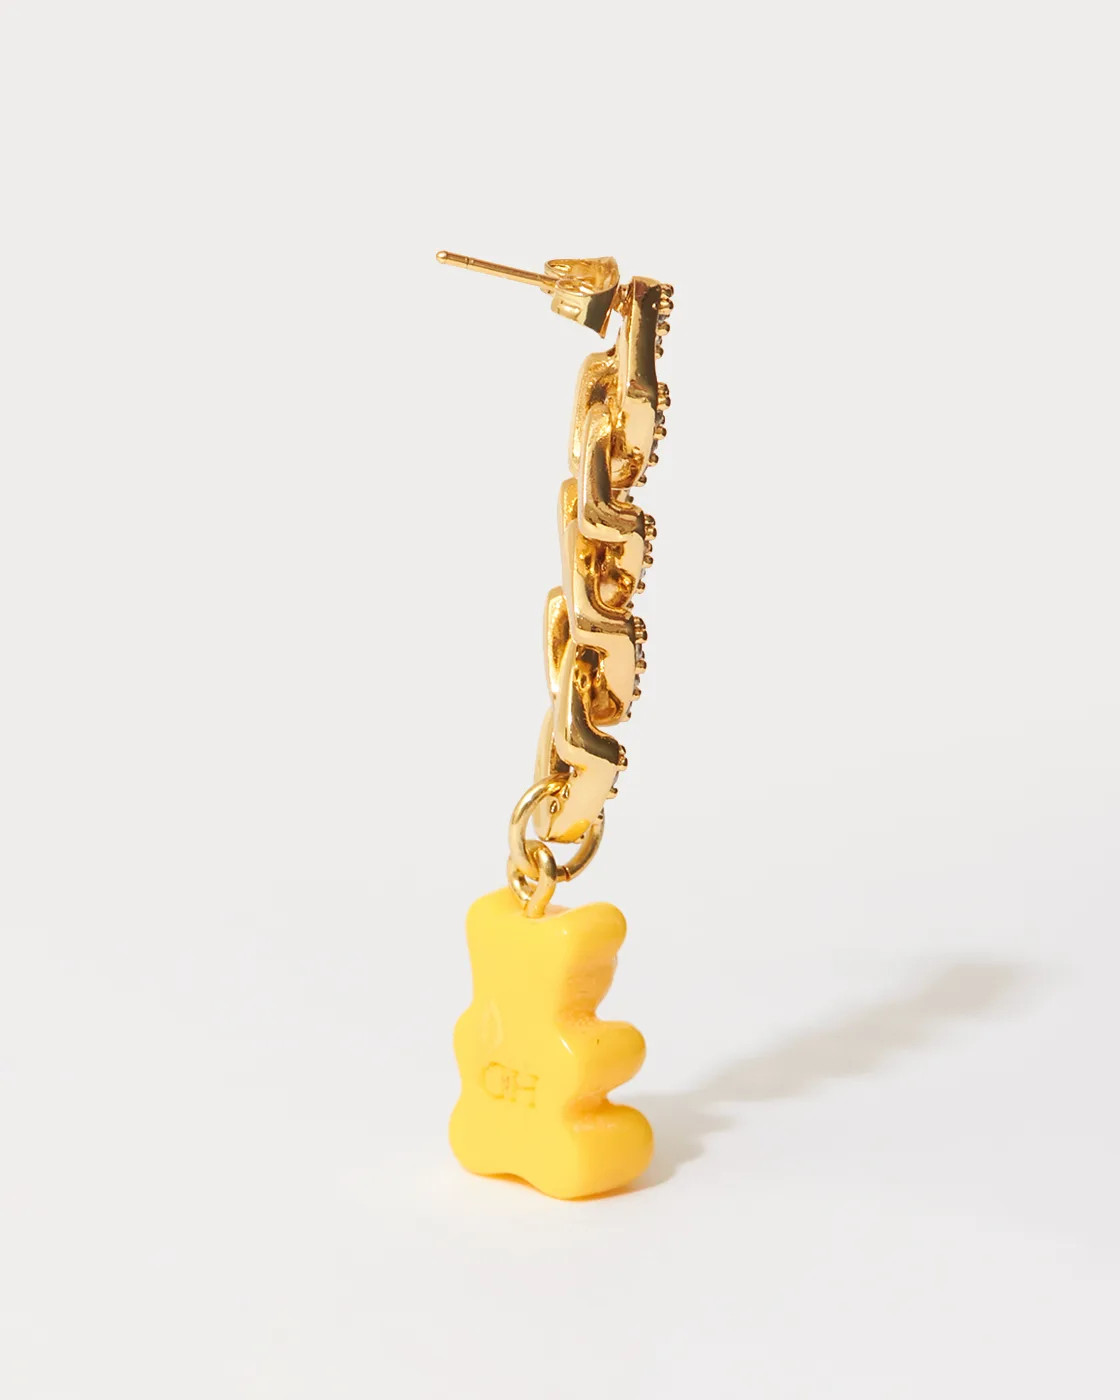 Nostalgie-Bär Vergoldeter Single Zirkonia-Ohrring aus Kunstharz - NYC Taxi gelb